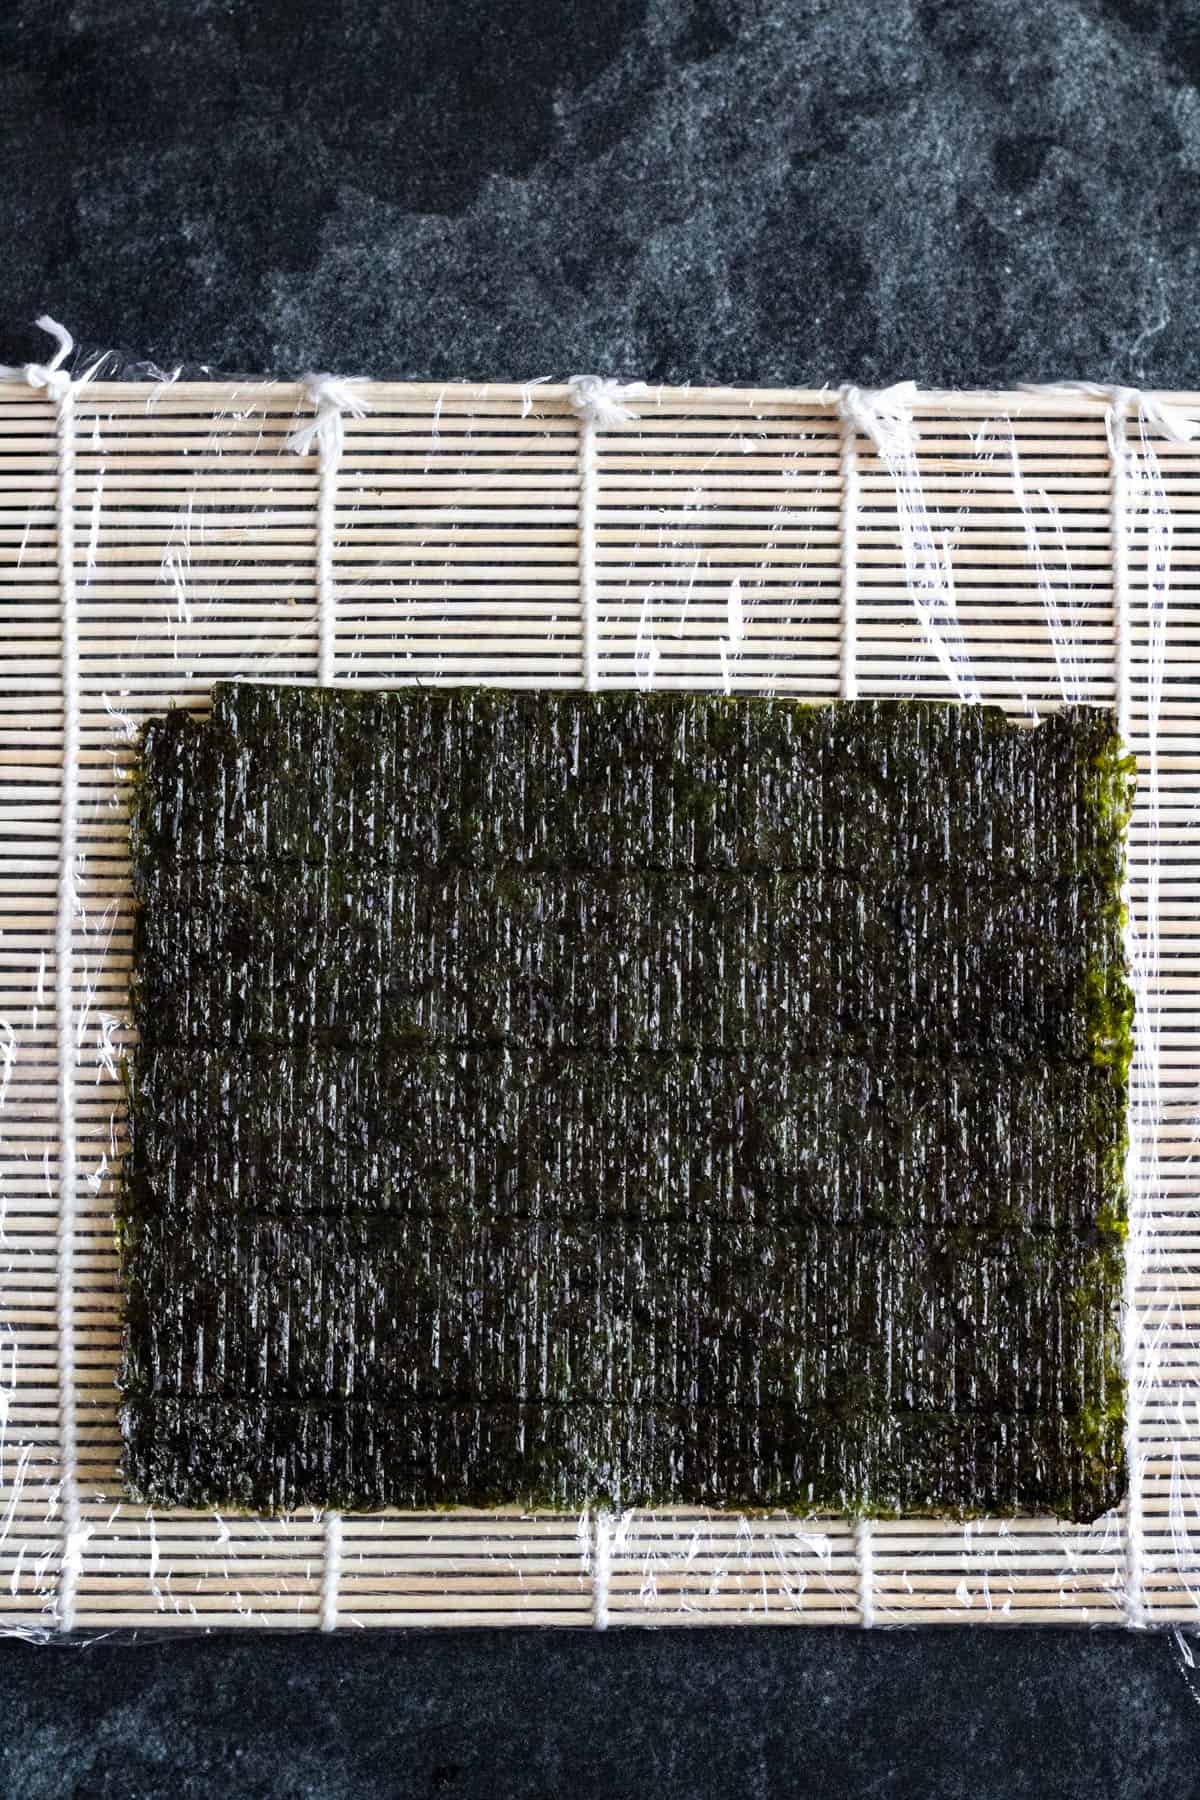 Nori sheet on a sushi mat. 